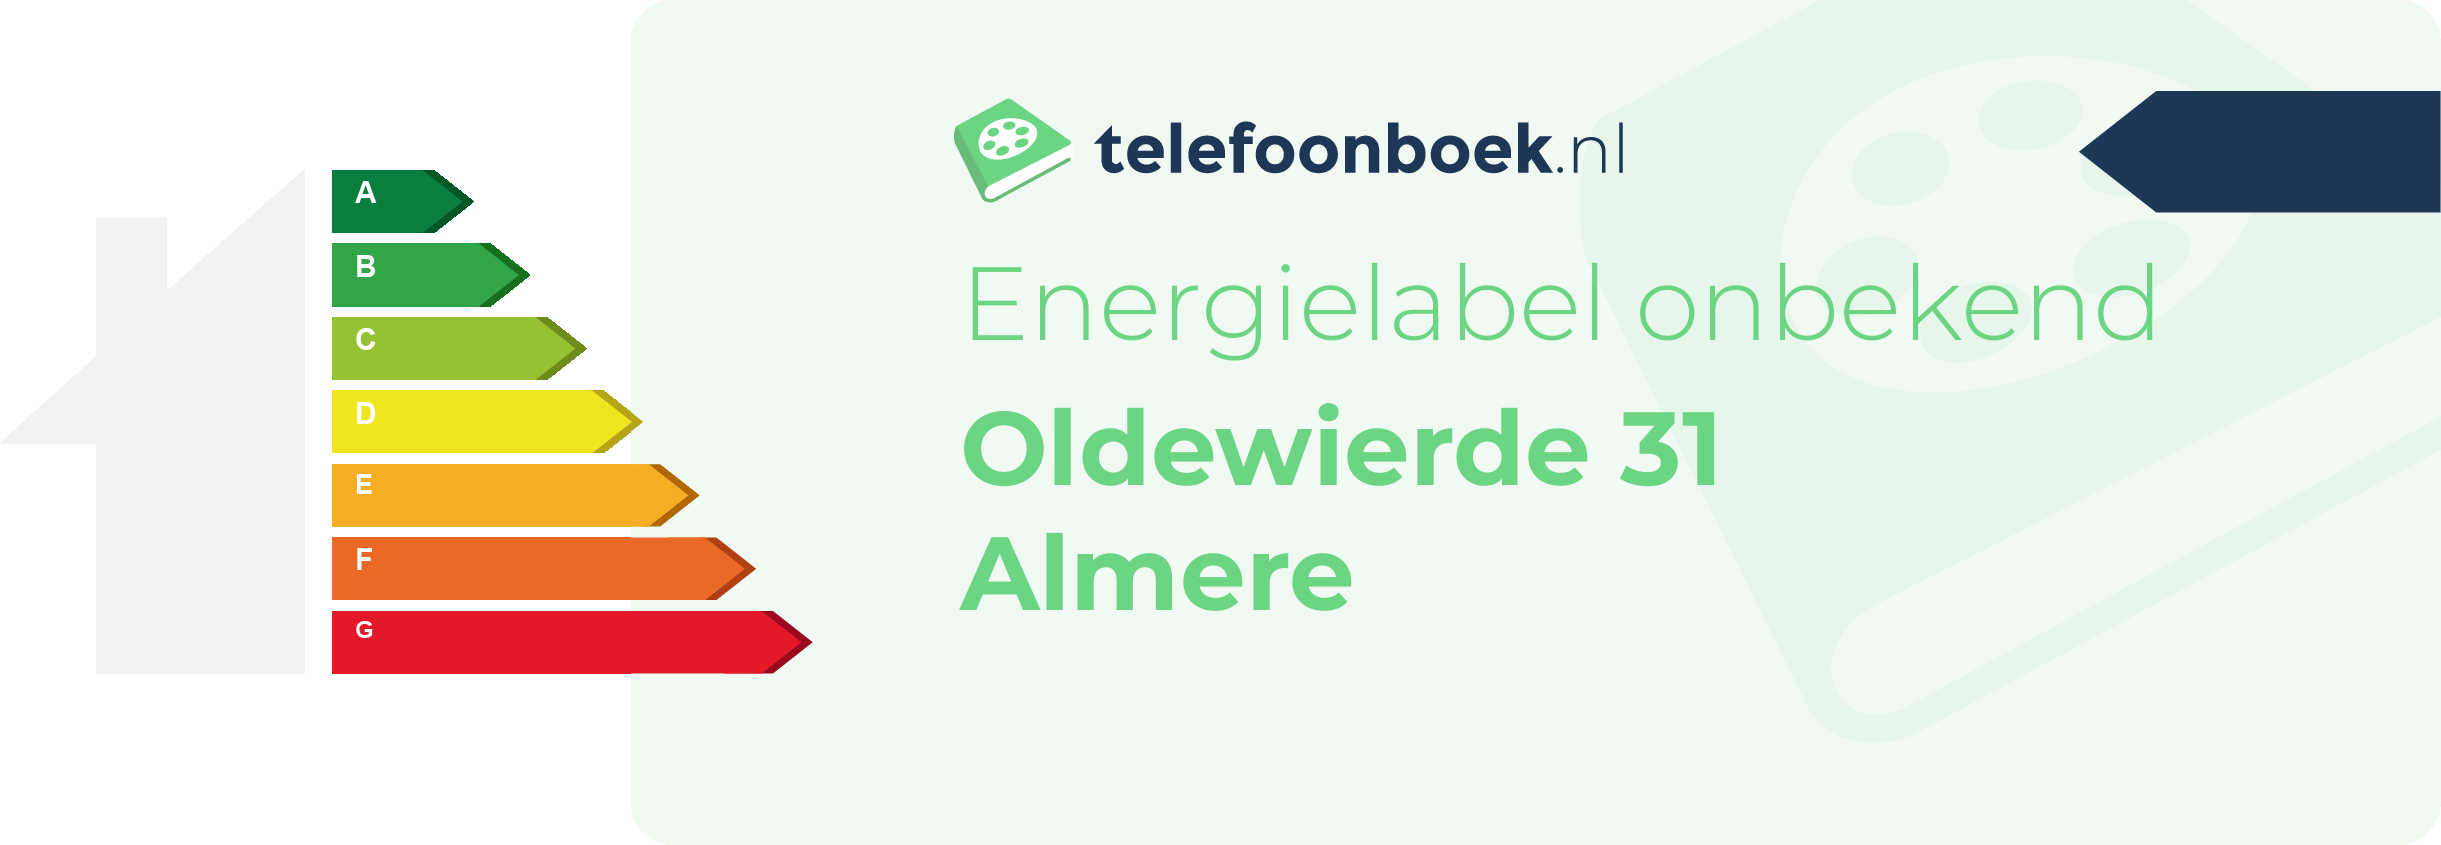 Energielabel Oldewierde 31 Almere